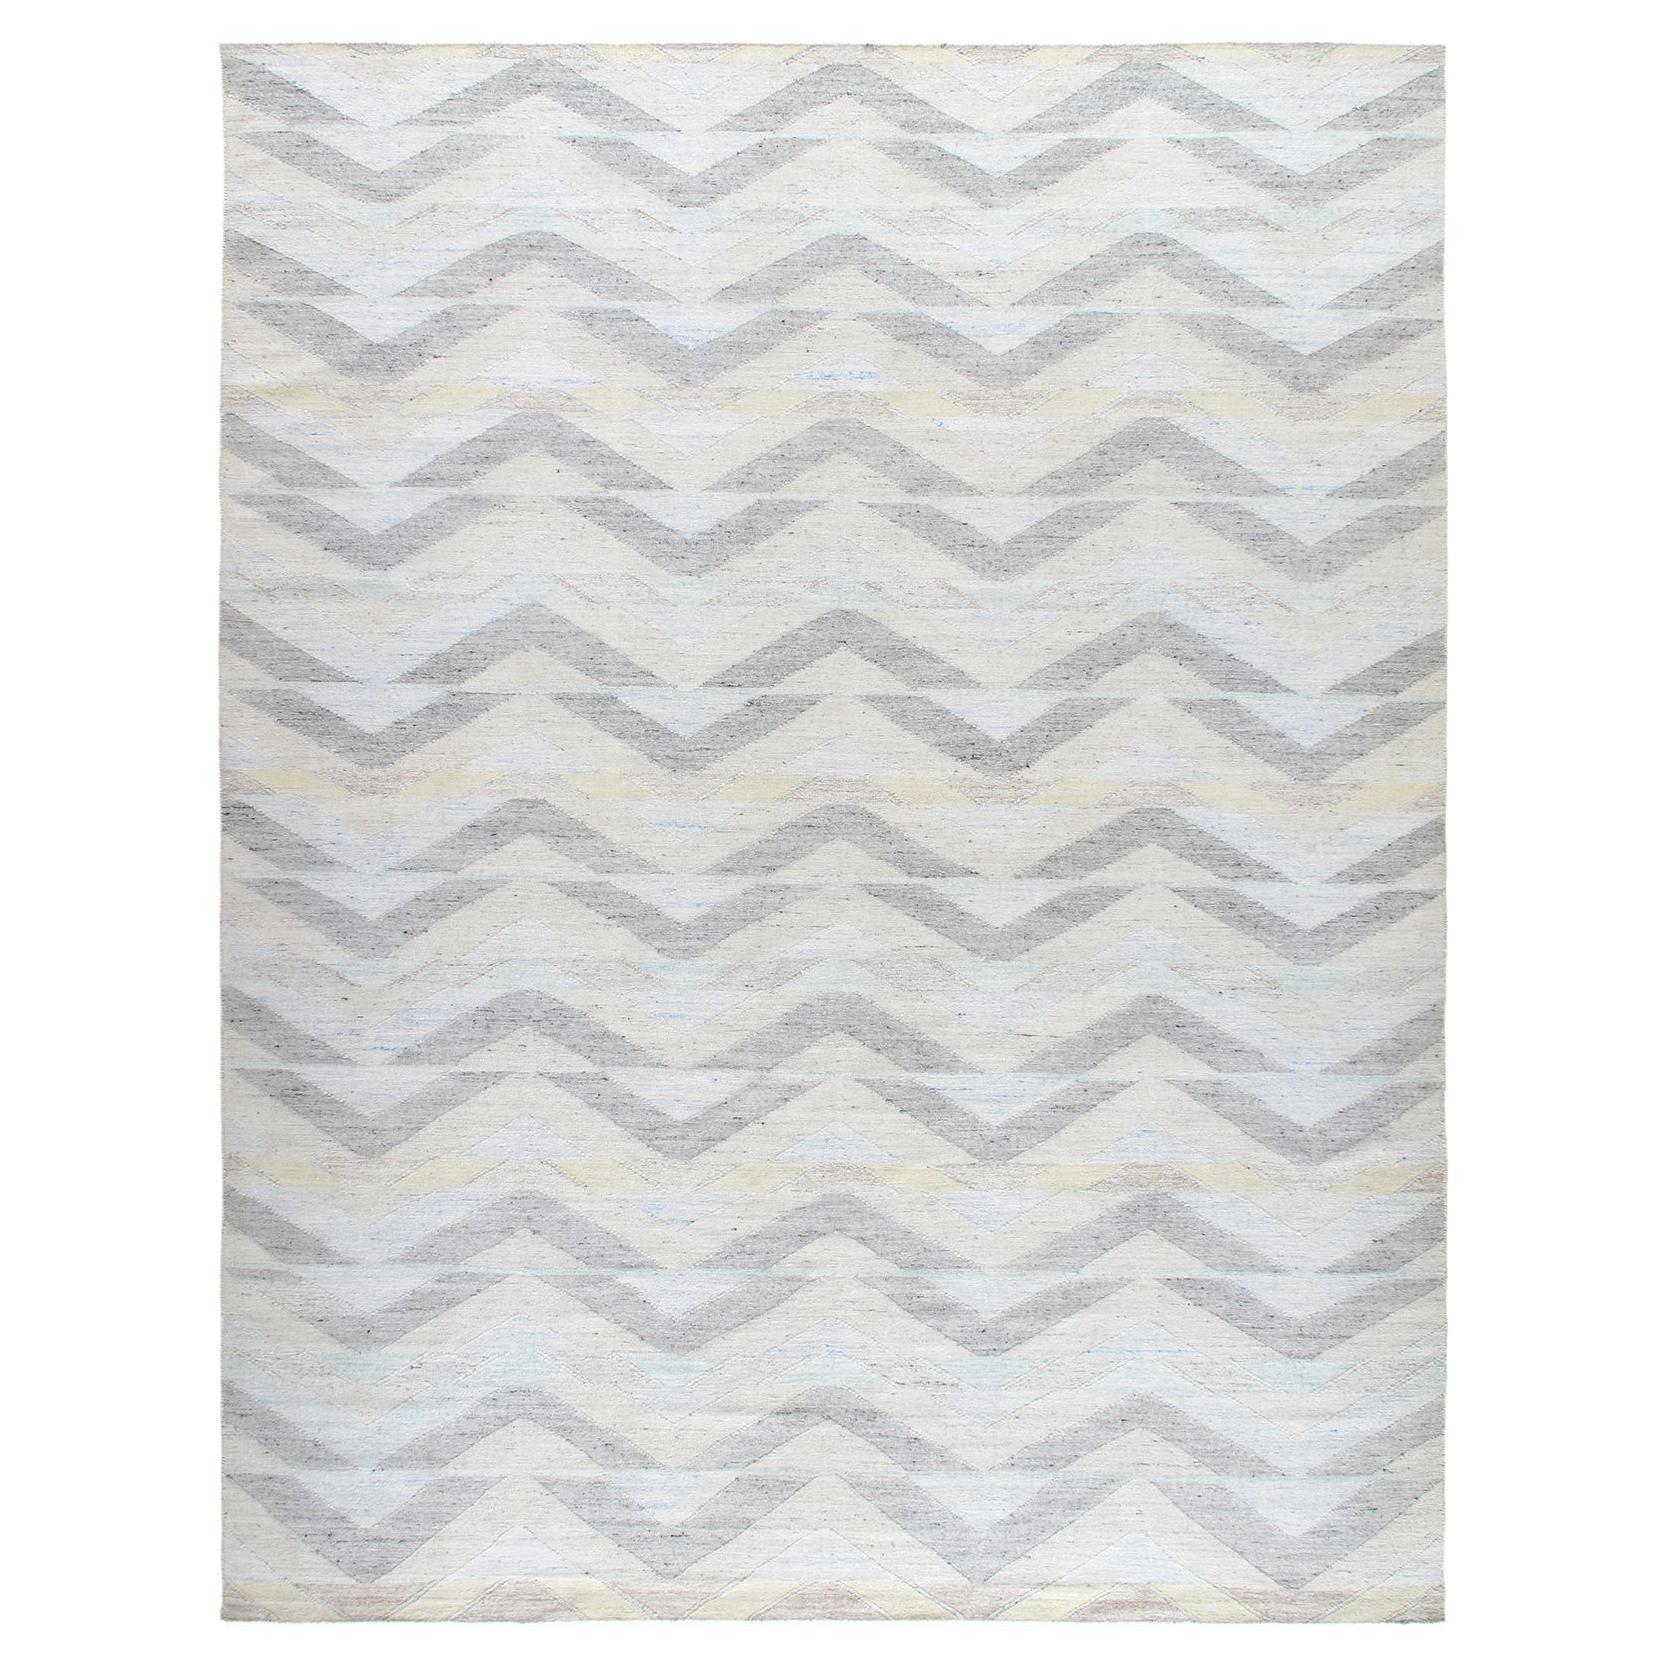 Moderner moderner minimalistischer Teppich im skandinavischen Stil